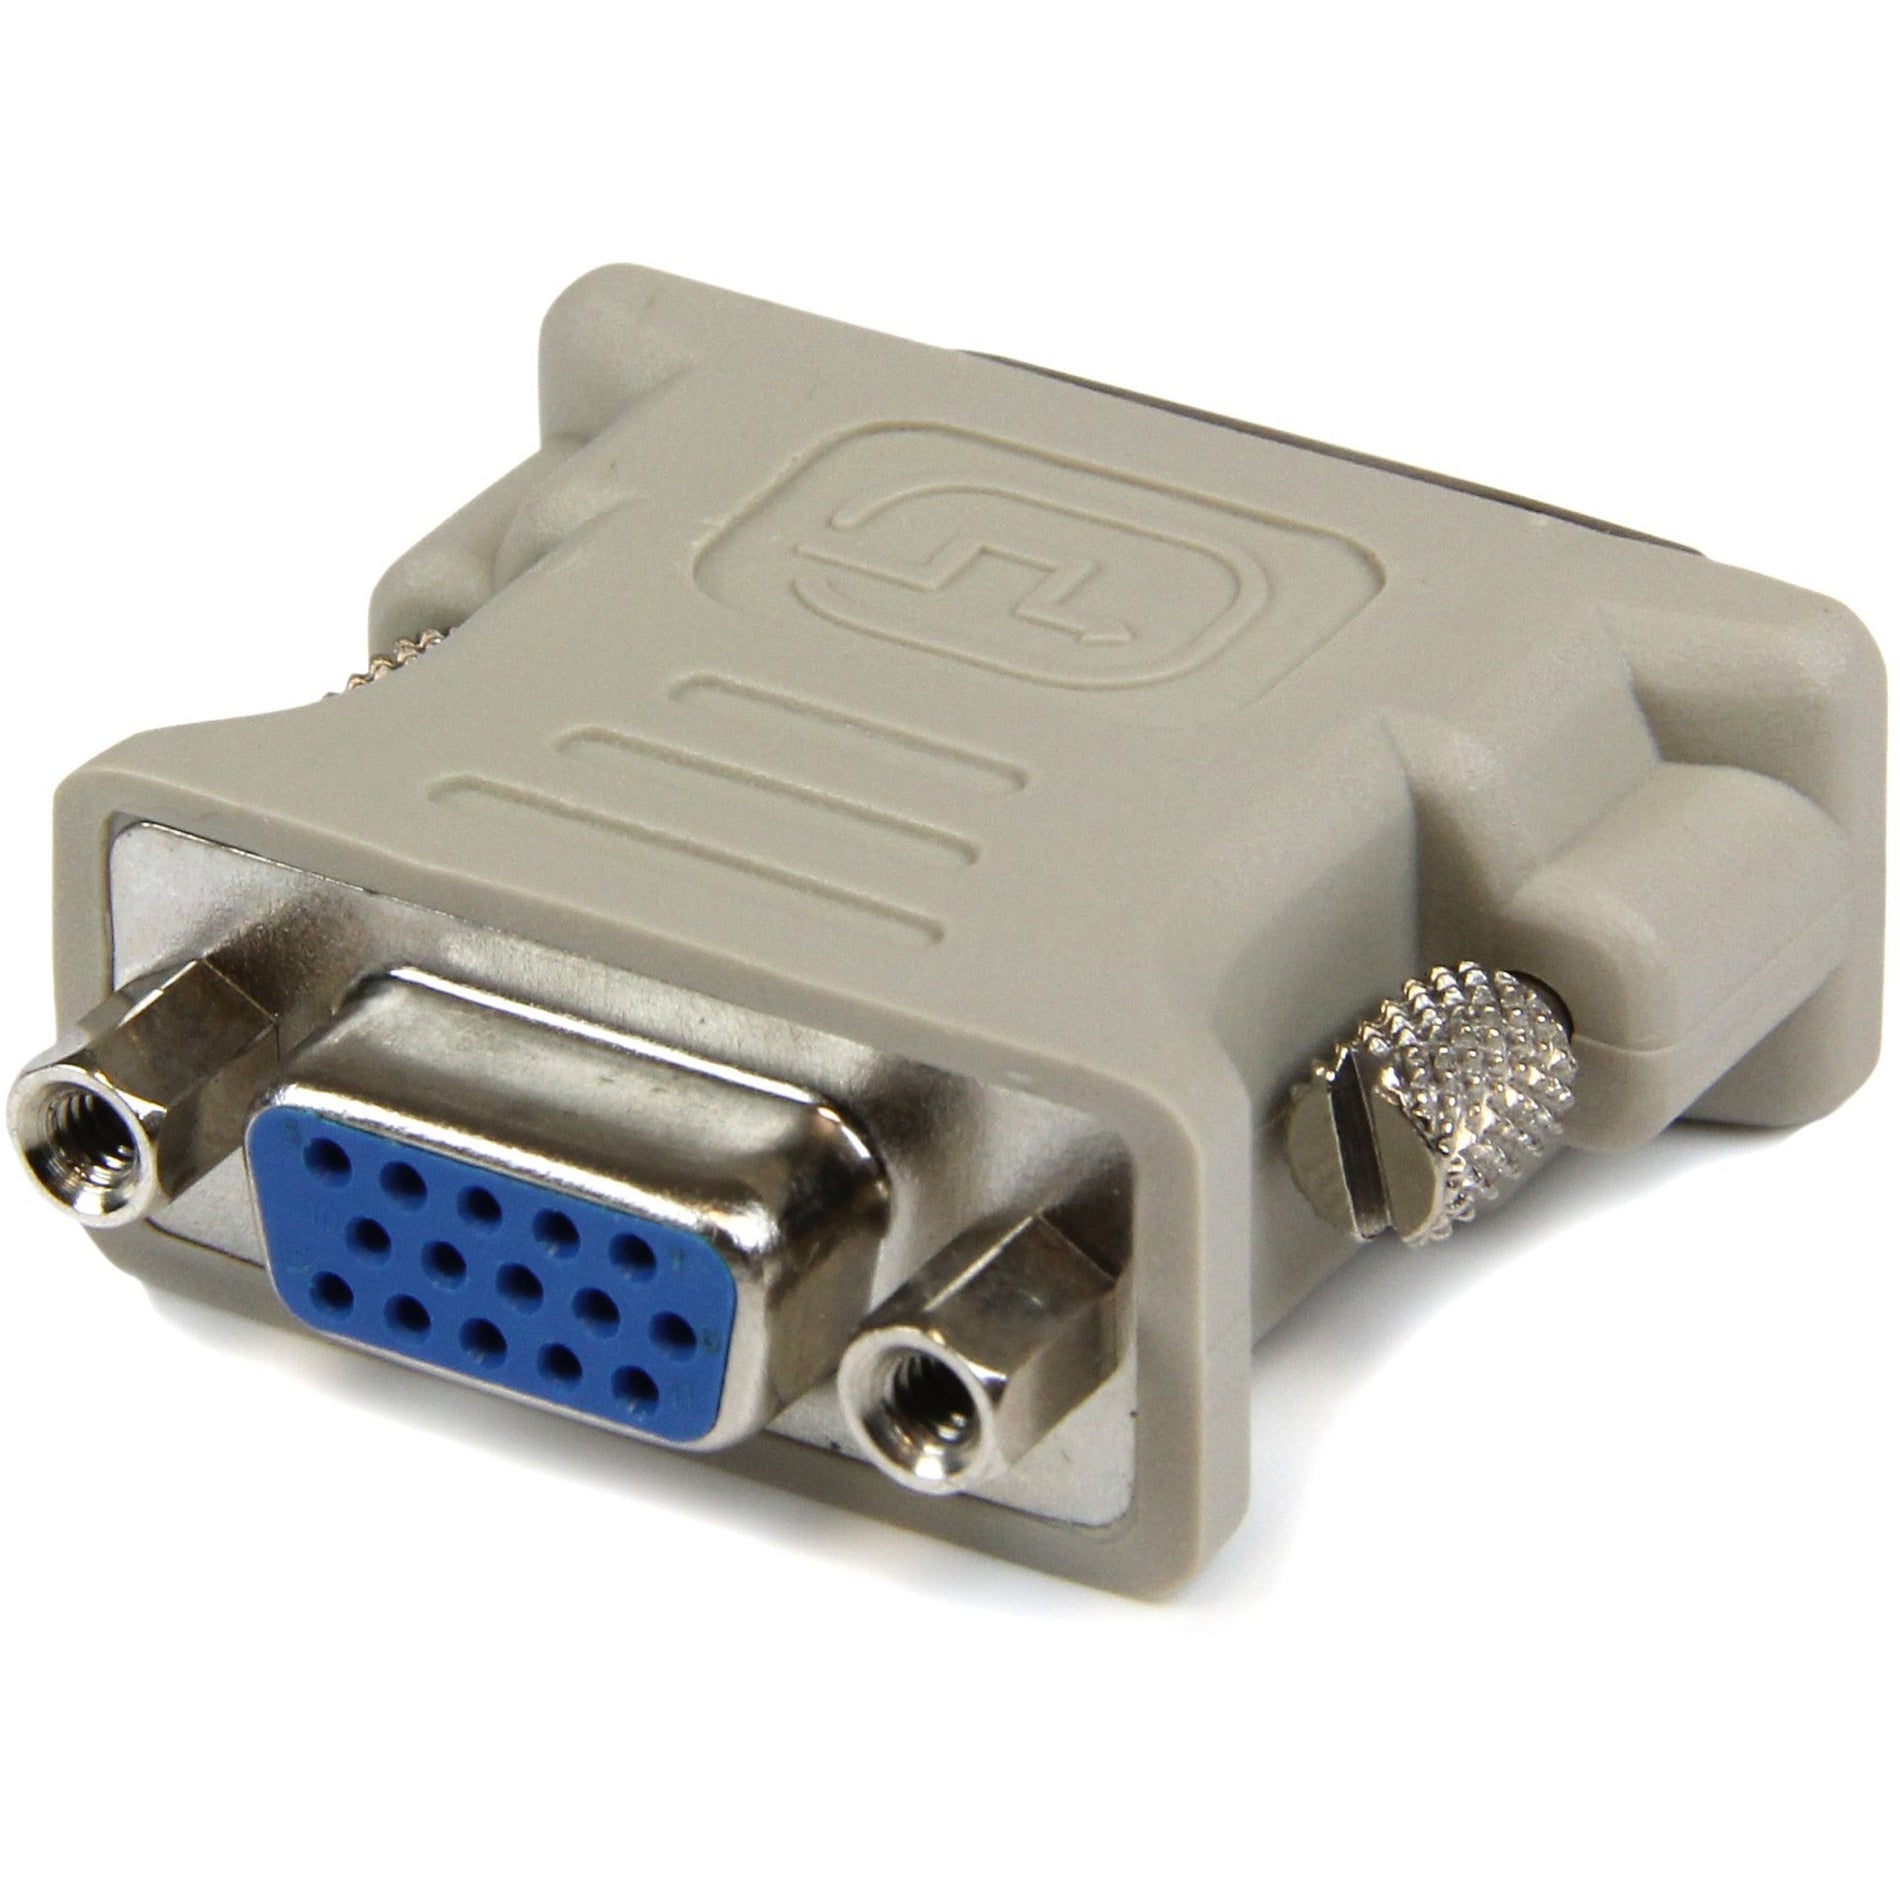 StarTech.com DVIVGAMF10PK Adaptador de cable DVI a VGA M/H - paquete de 10 moldeado bloqueo con tornillo niquelado color beige.